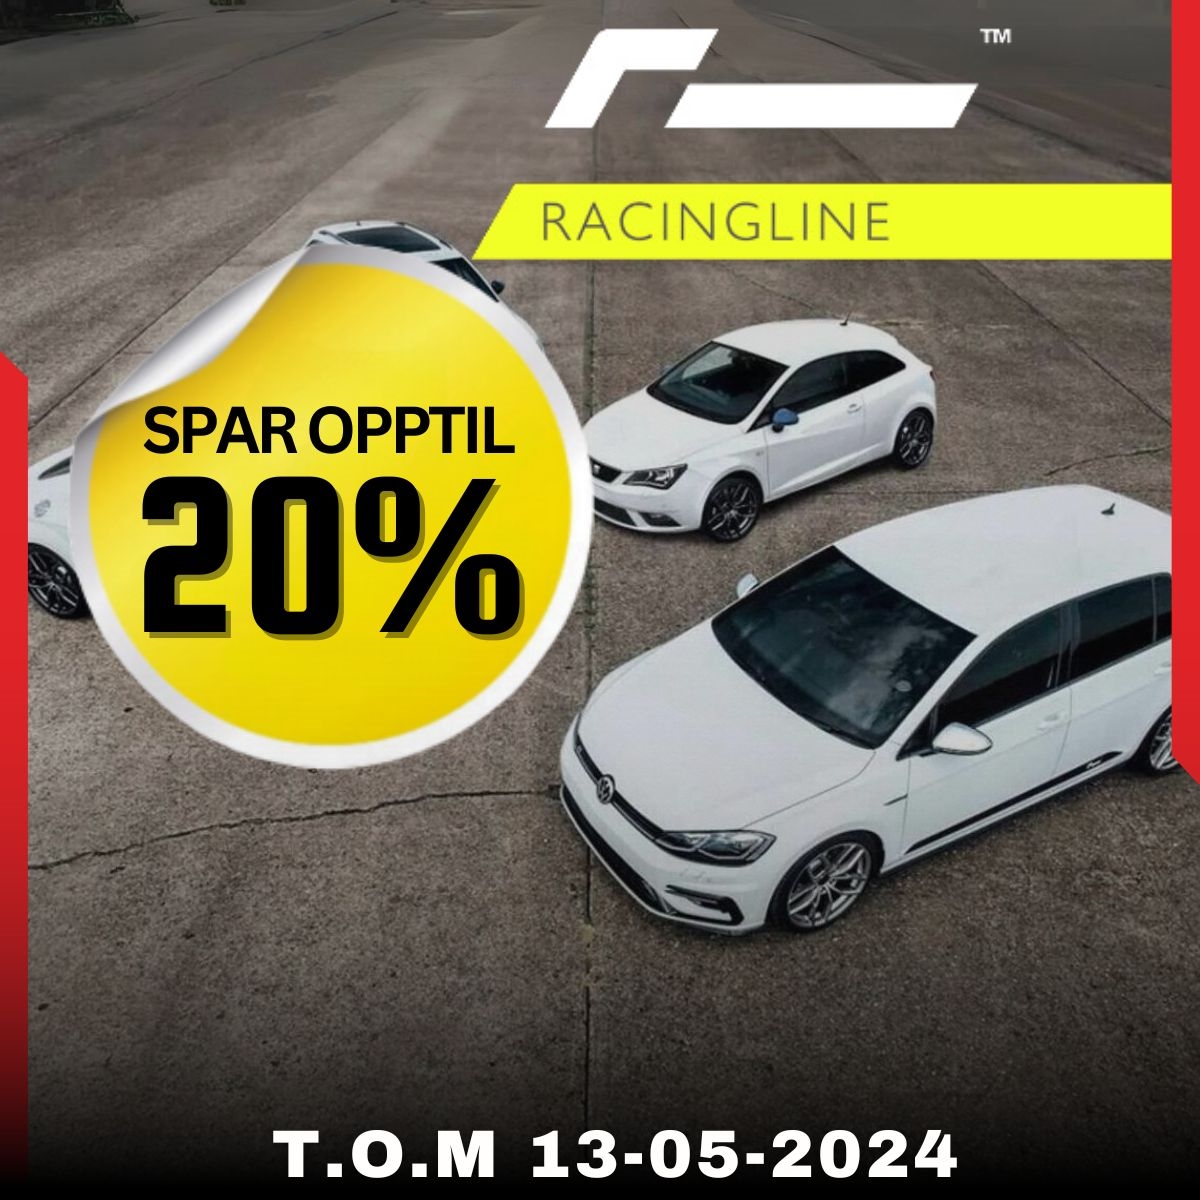 Spar opptil 20% på Racingline og gi bilen din et løft.